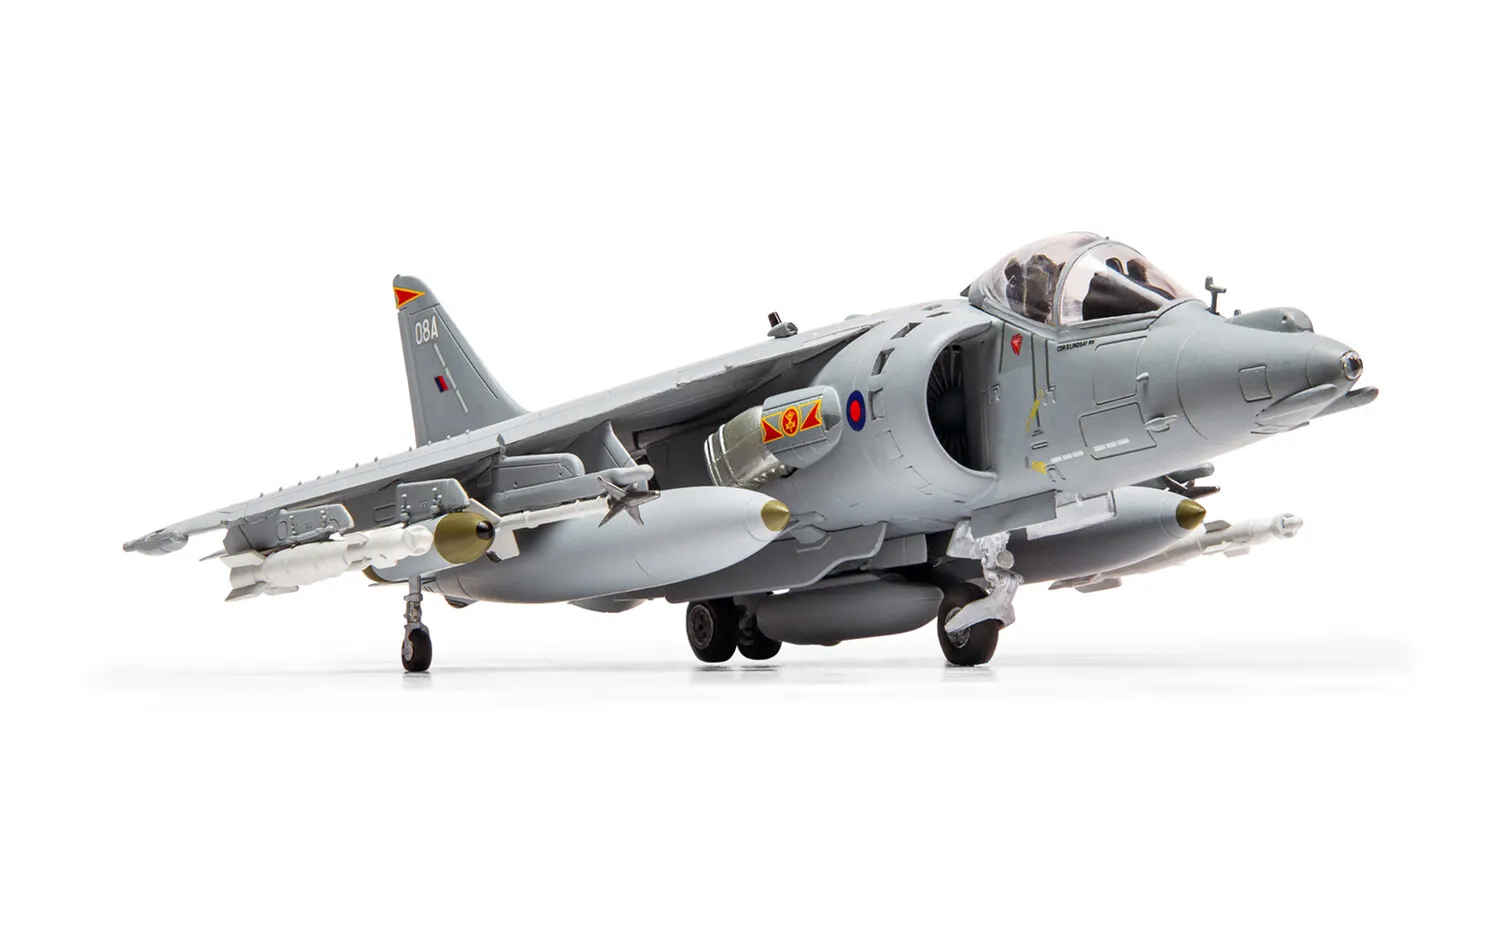 Hanging Gift Set - BAE Harrier GR.9A